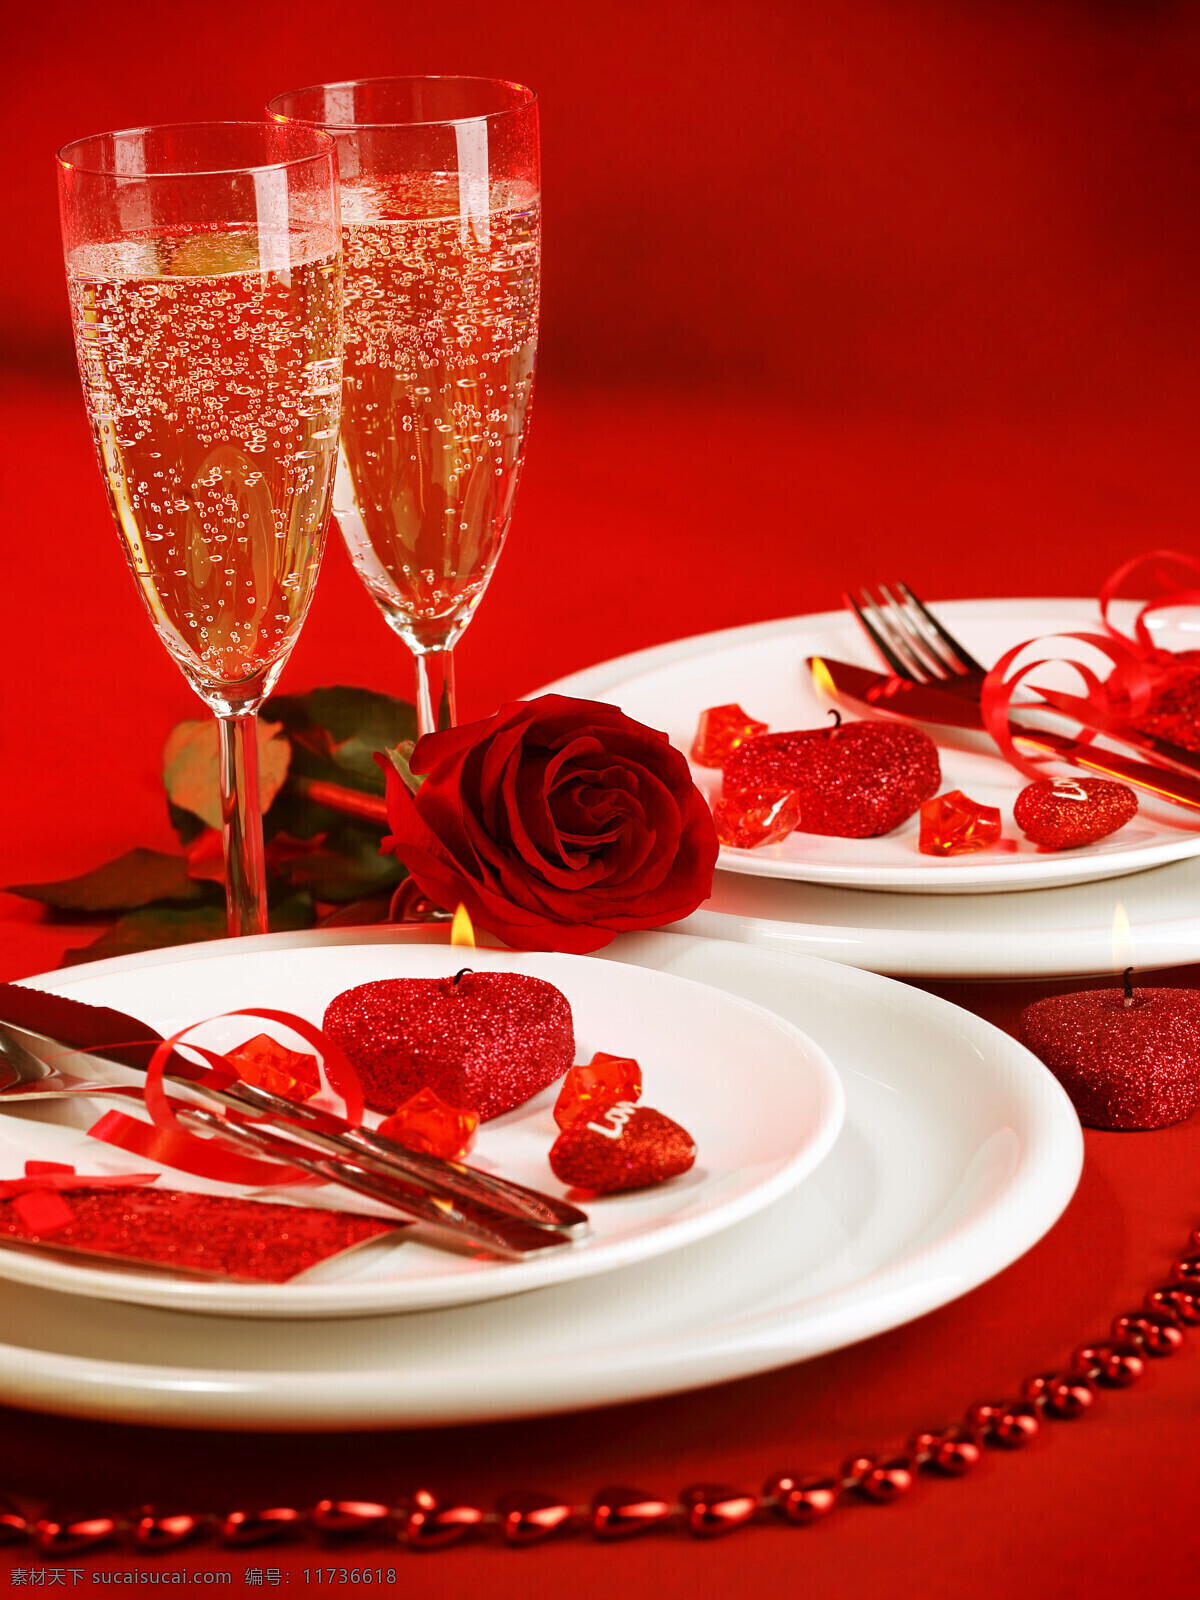 红色 桌面 上 玫瑰花 酒杯 红色背景 红色桌面 红玫瑰 酒 饮料 盘子 餐具 其他类别 生活百科